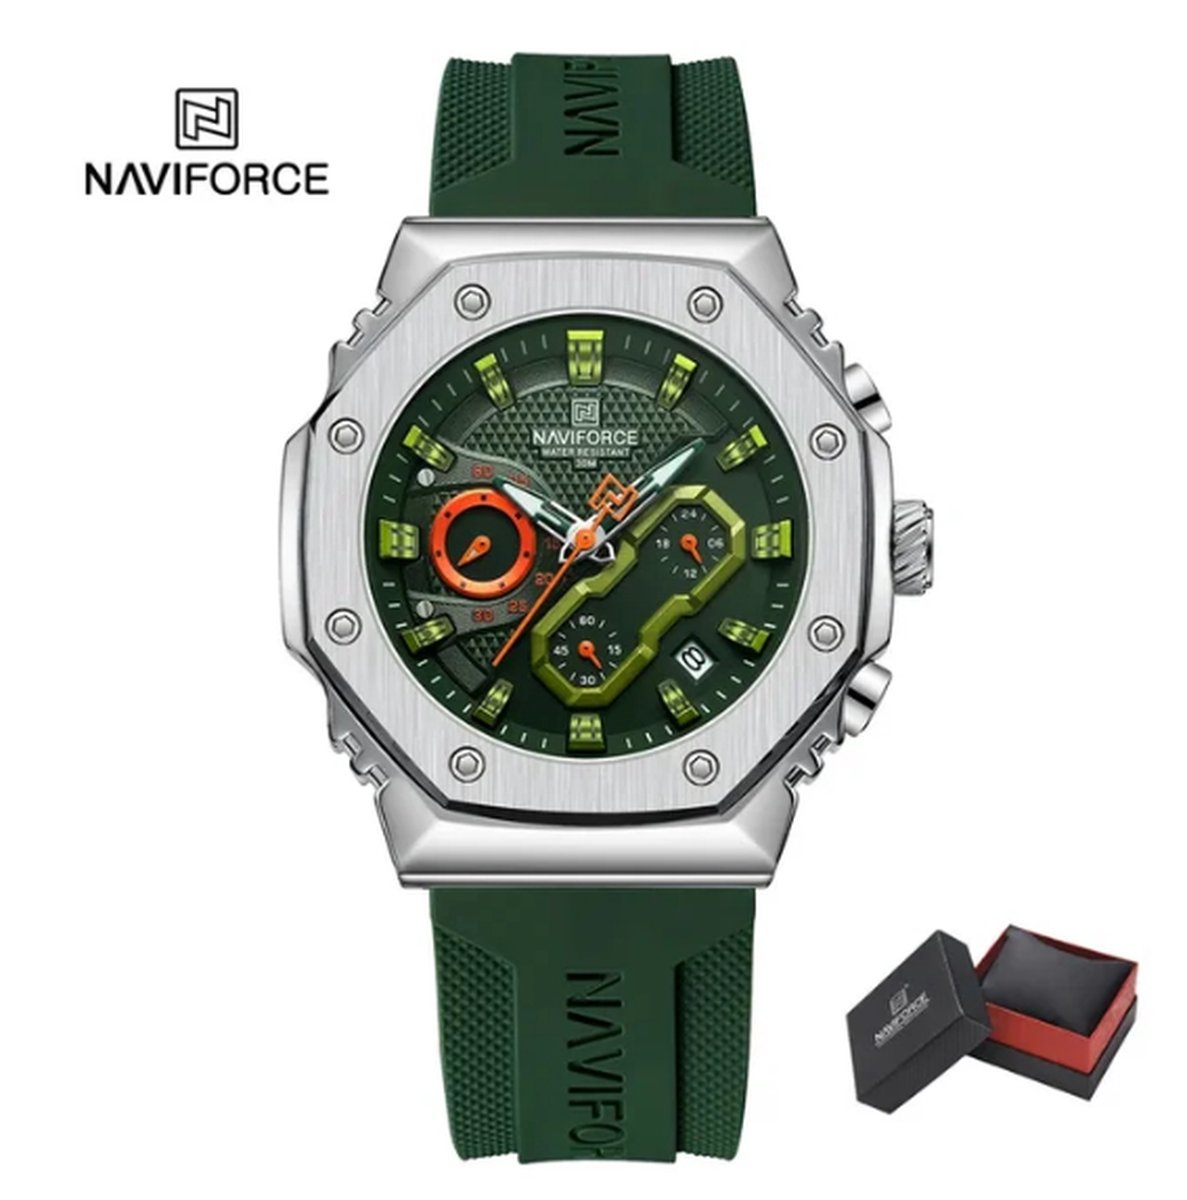 NAVIFORCE 8035 Horloge voor mannen - Groen - Siliconen Band - Verpakt in mooie geschenkdoos - Zilveren uurwerkkast - Batterij inclusief